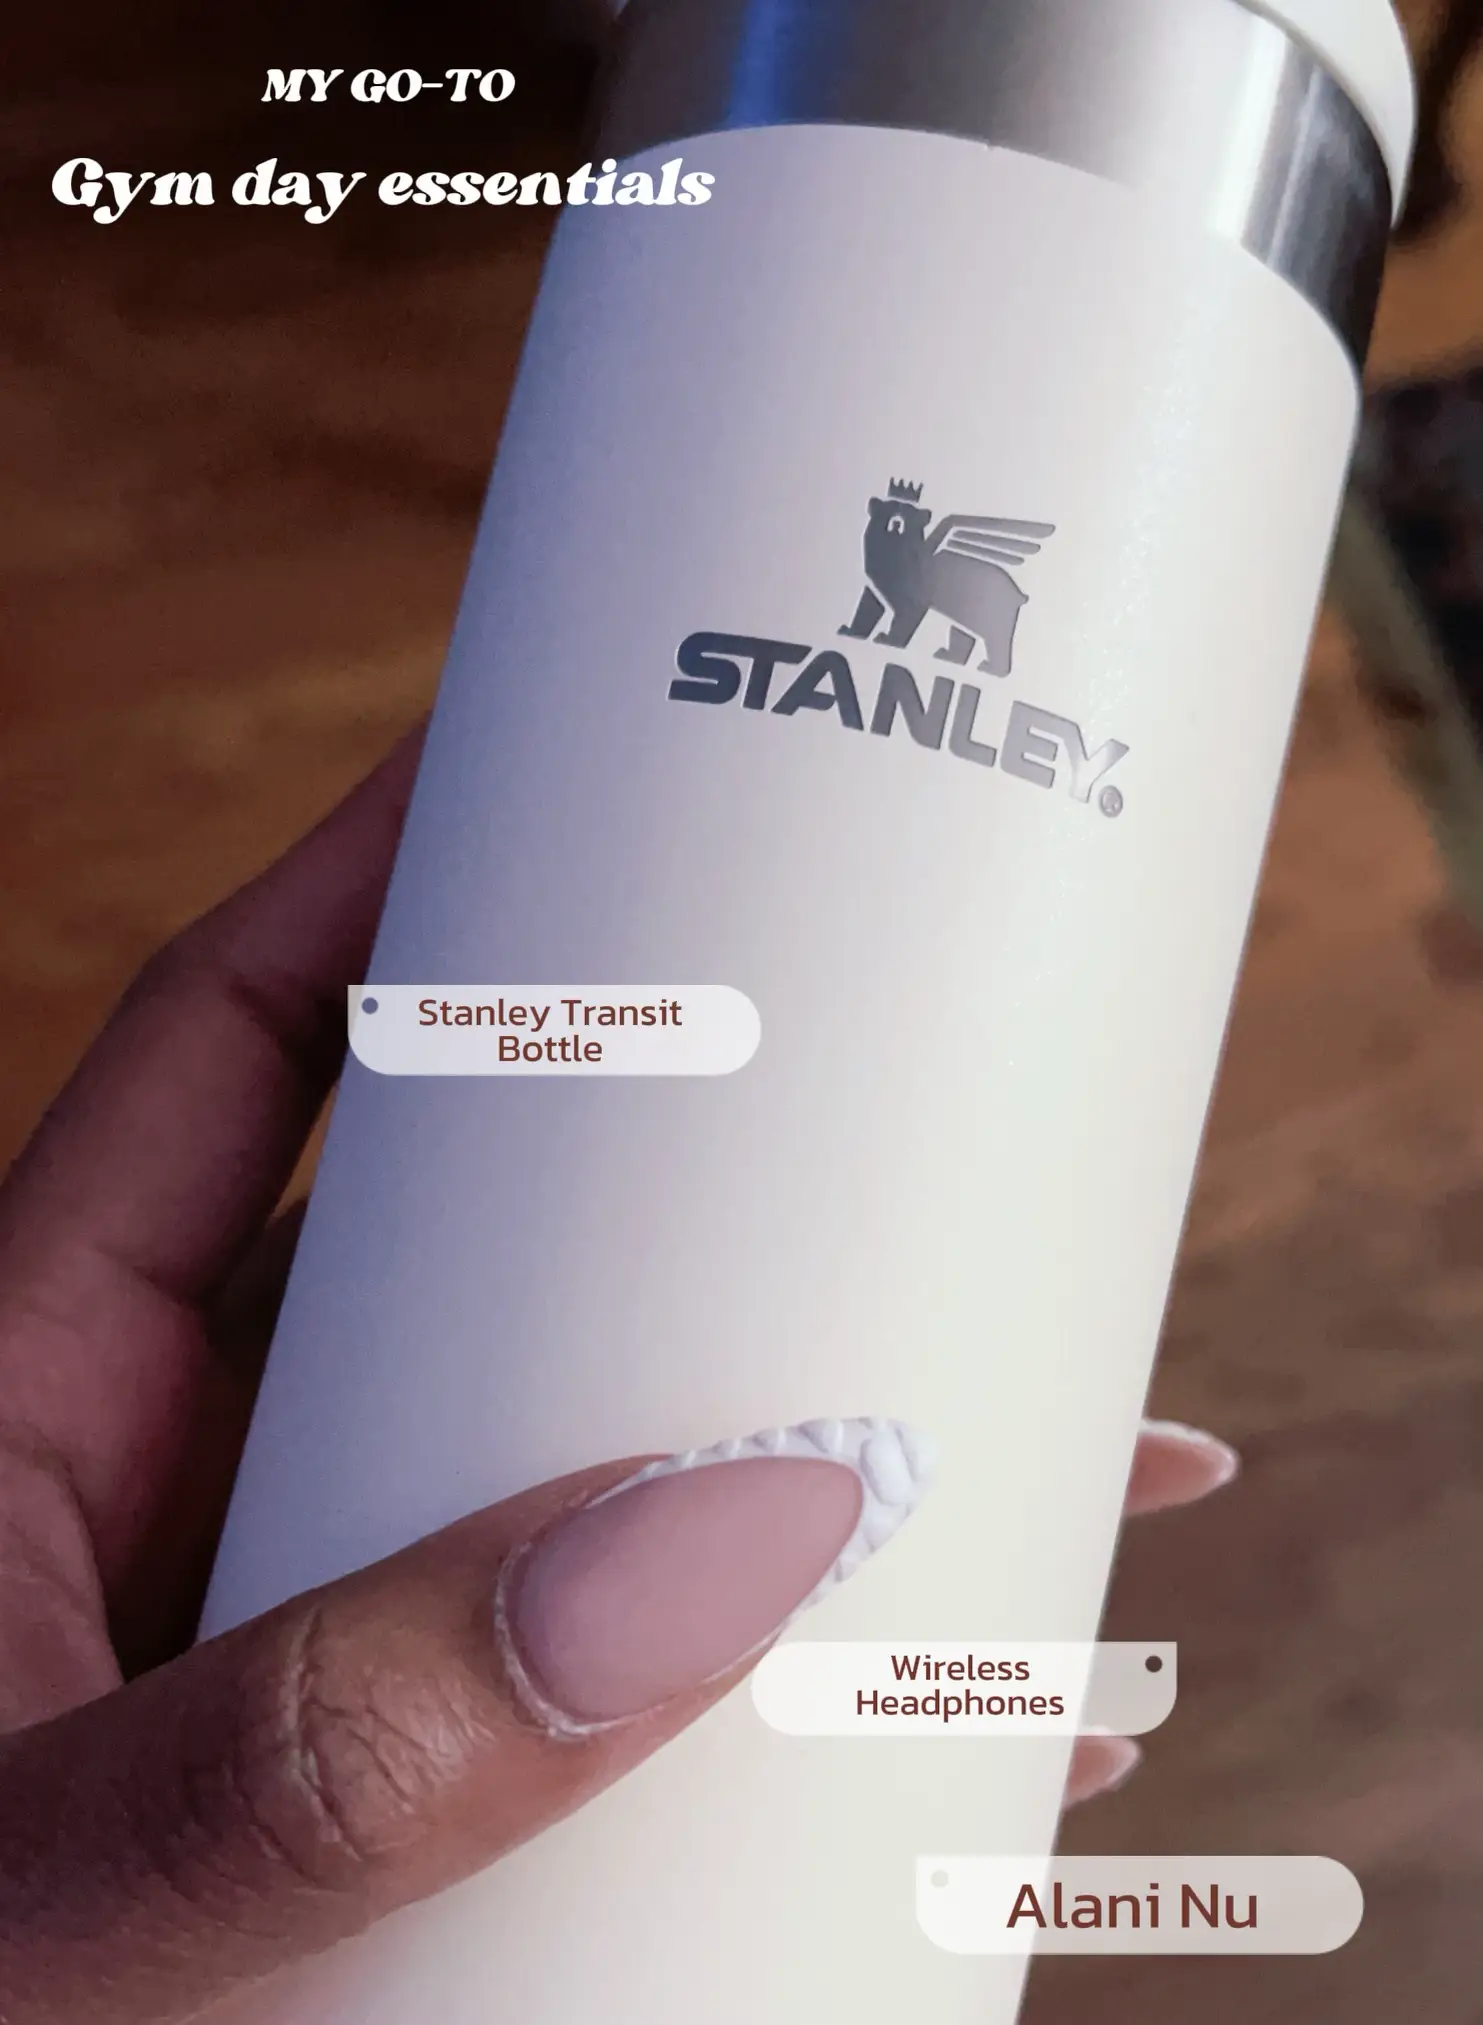 Stanley Transit Bottle, Gallery posted by Allinikole